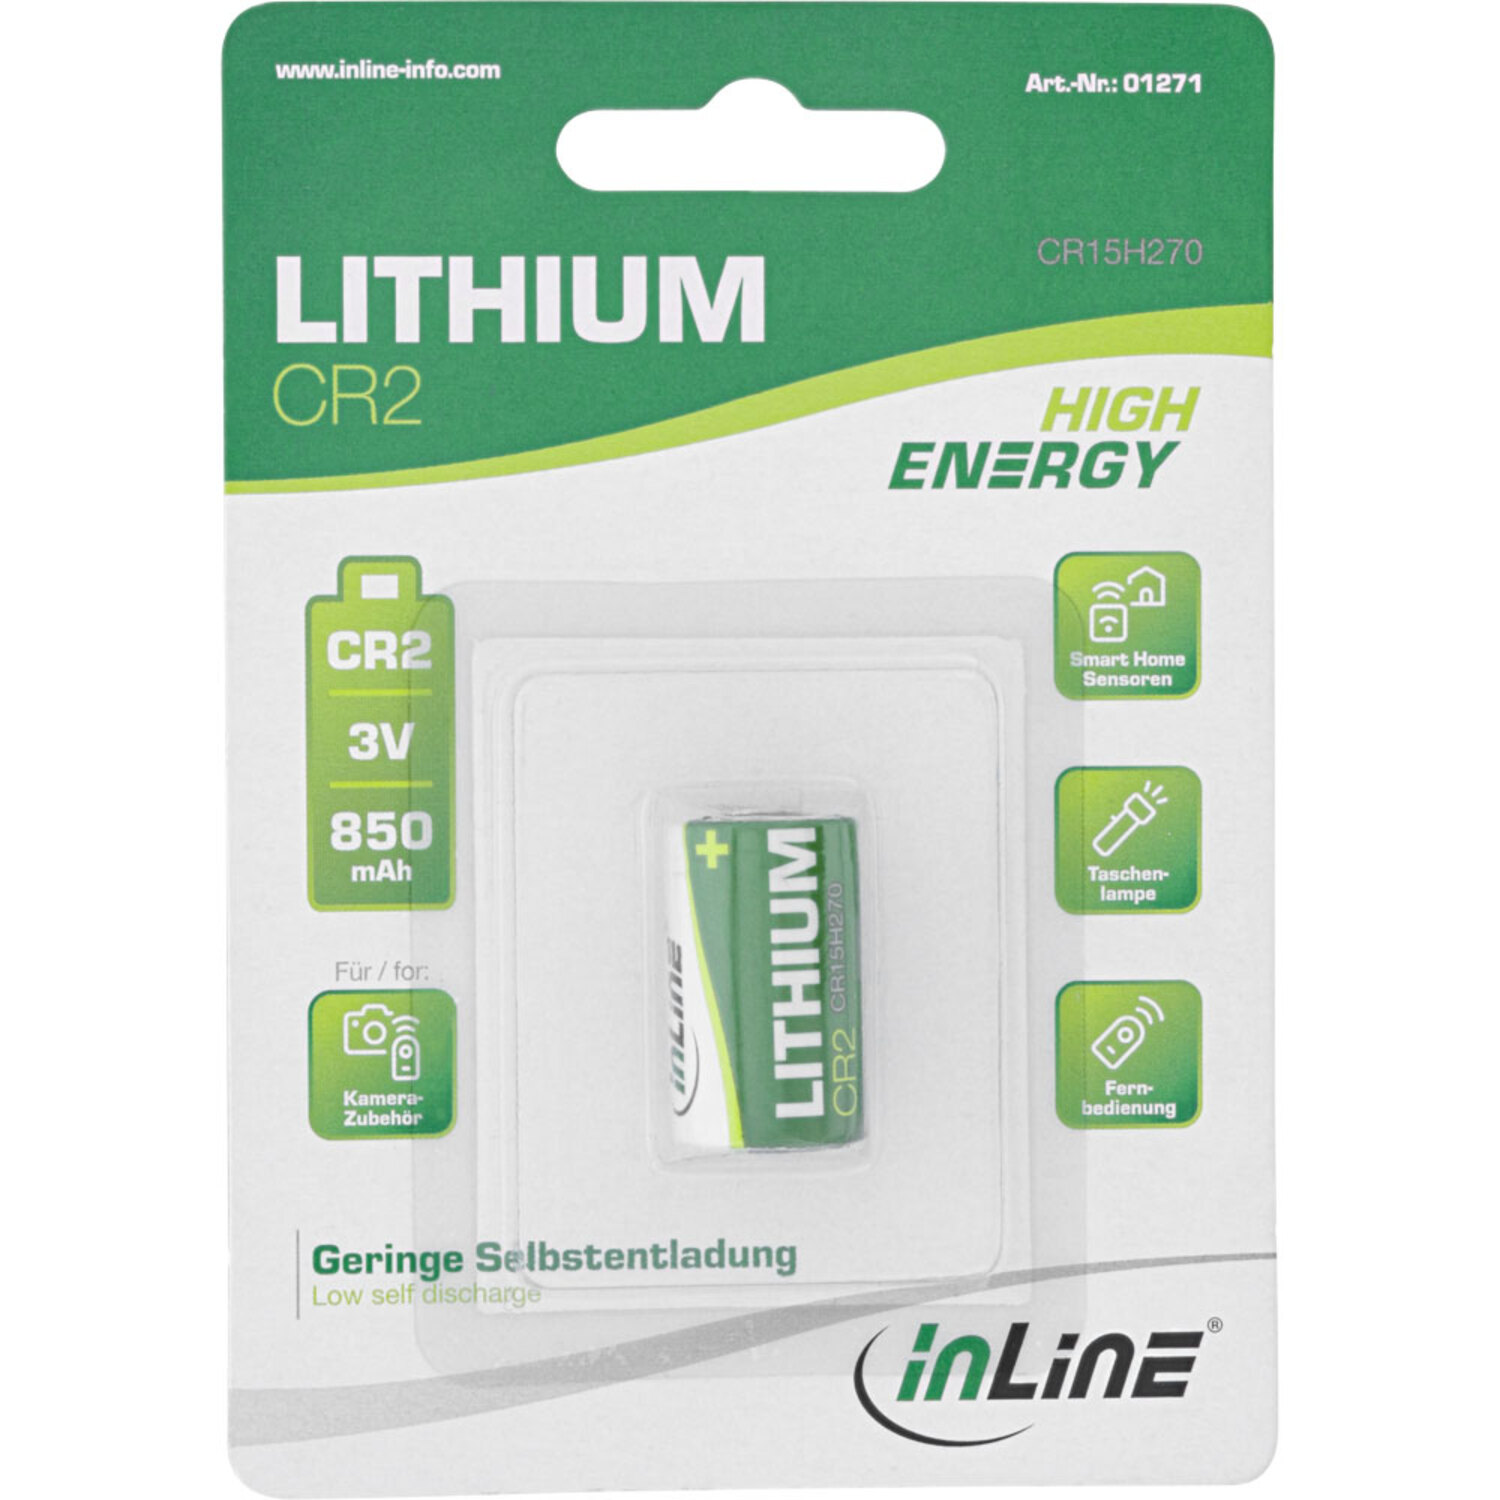 INLINE InLine® Lithium Batterie Batterien Energy Batterien 3V CR2, 850mAh, Fotobatterie, High 